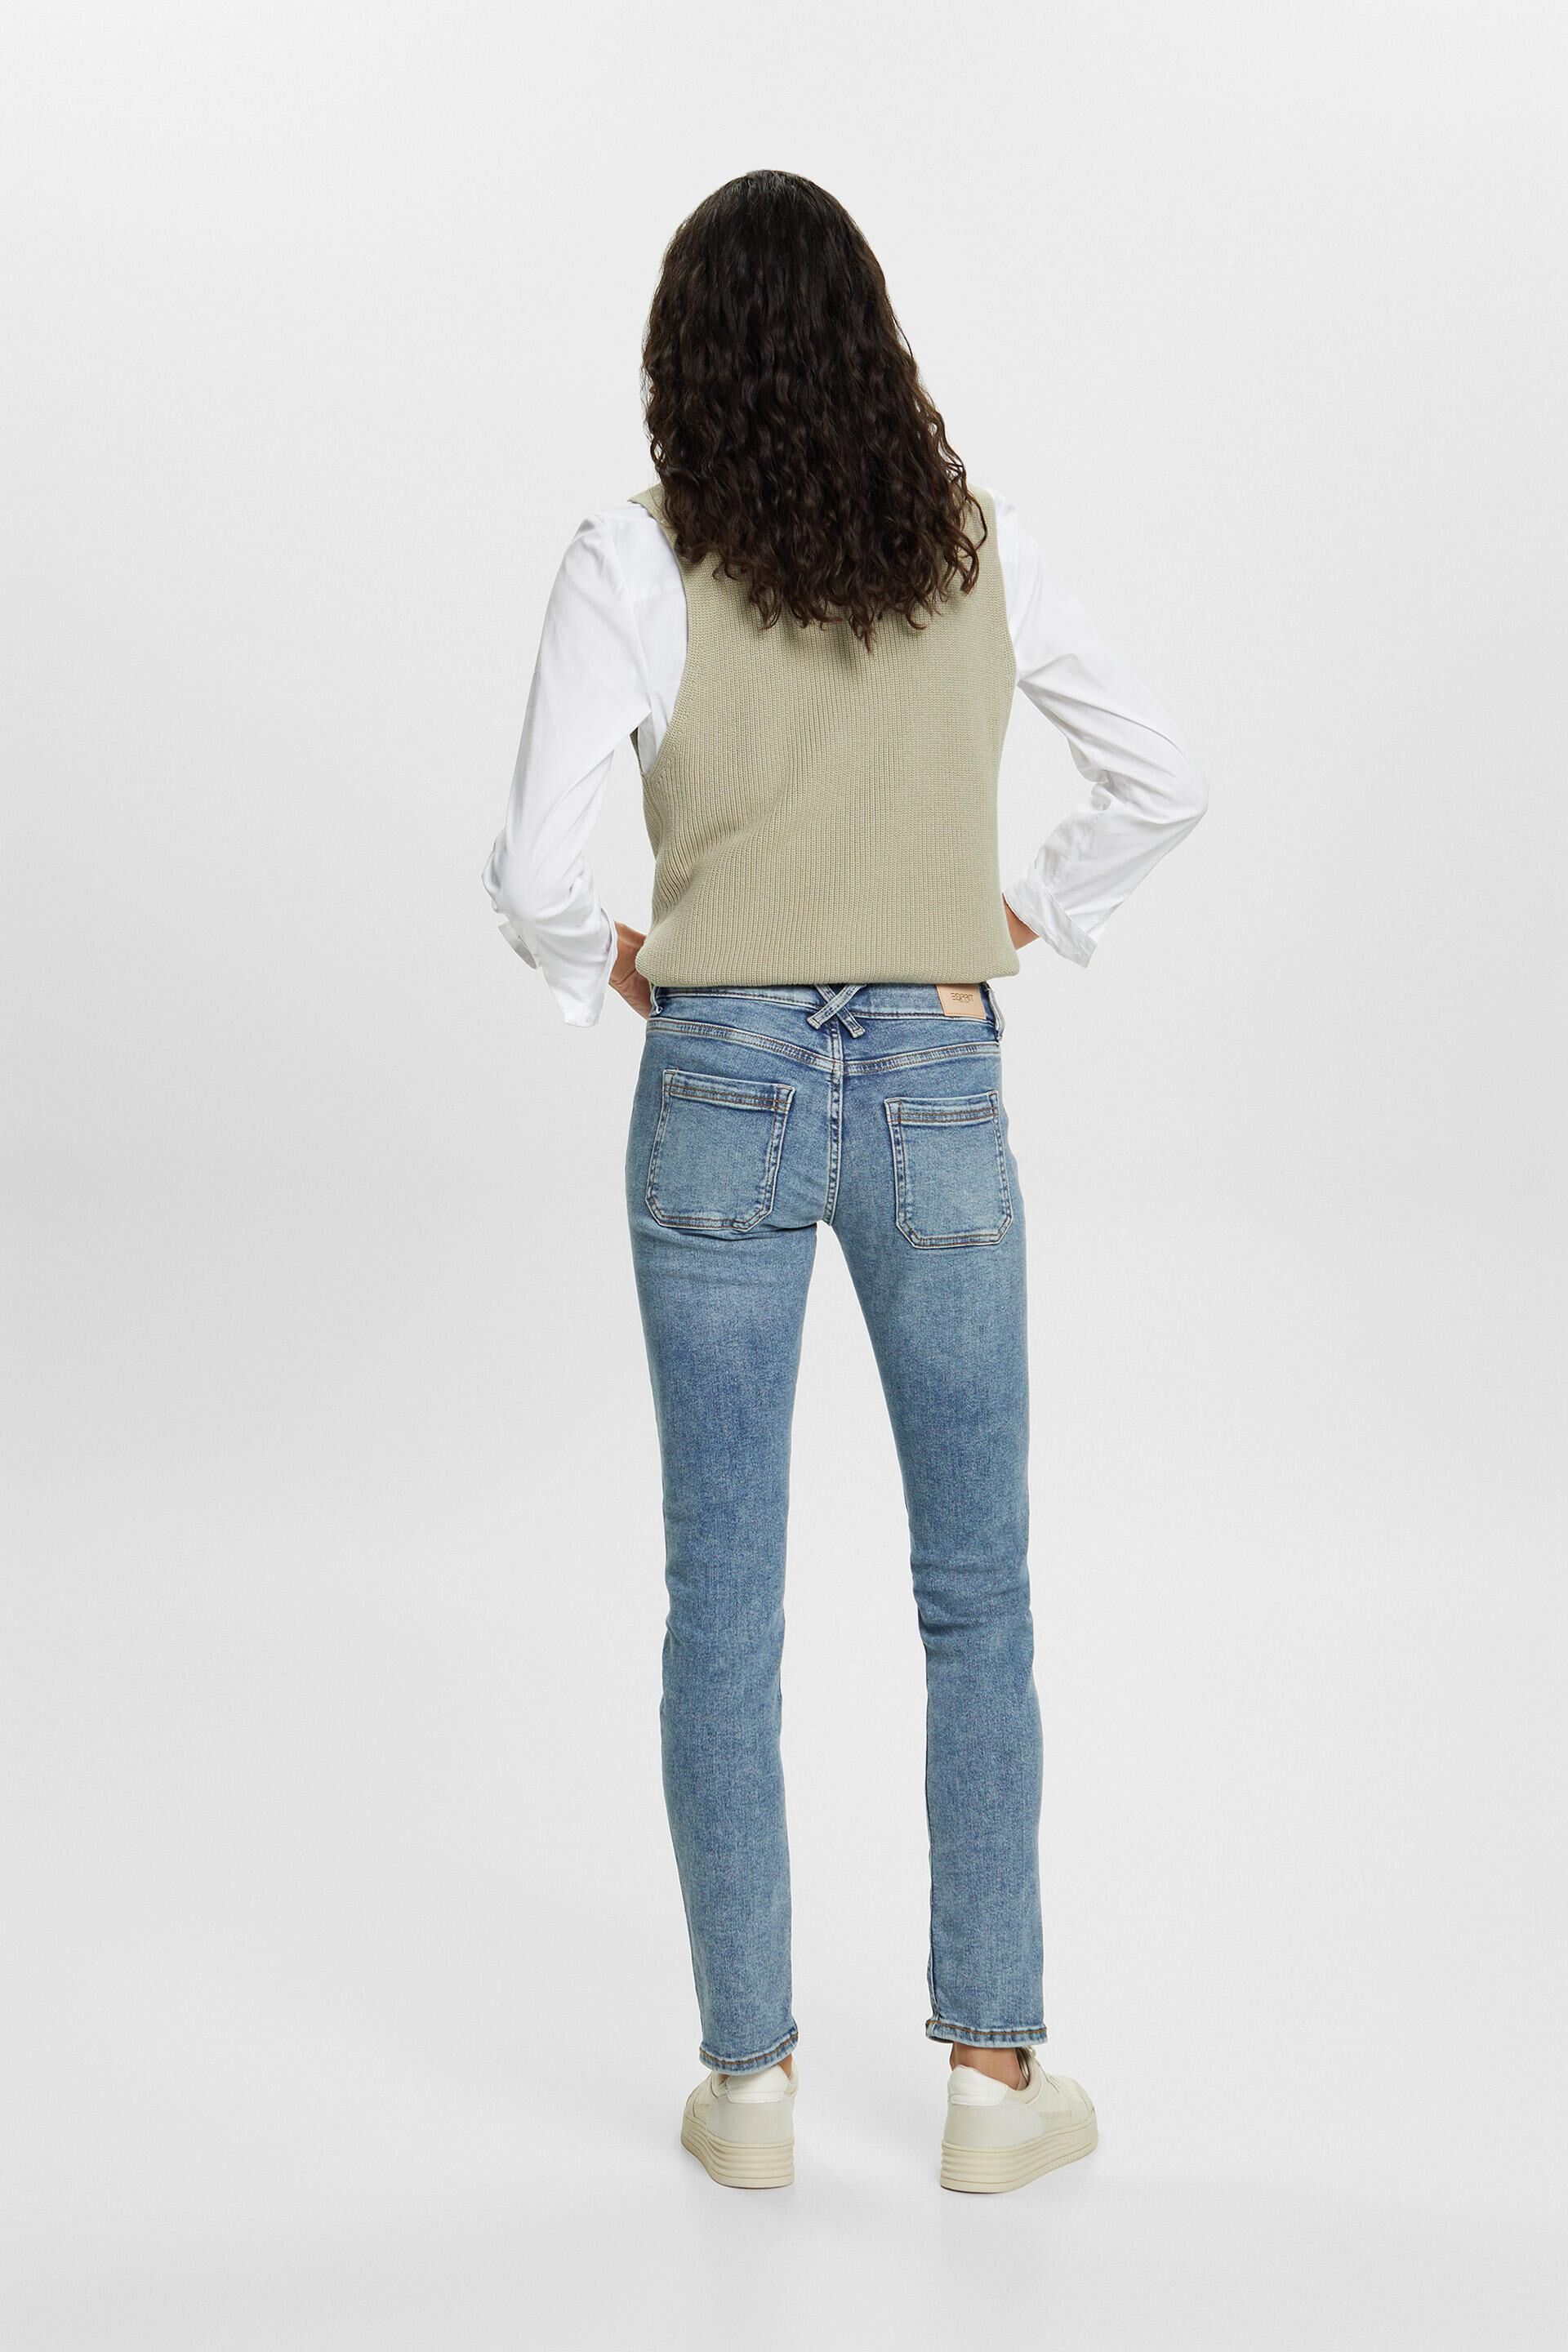 Esprit Damen Recycelt: Slim-Jeans mit mittlerer Leibhöhe